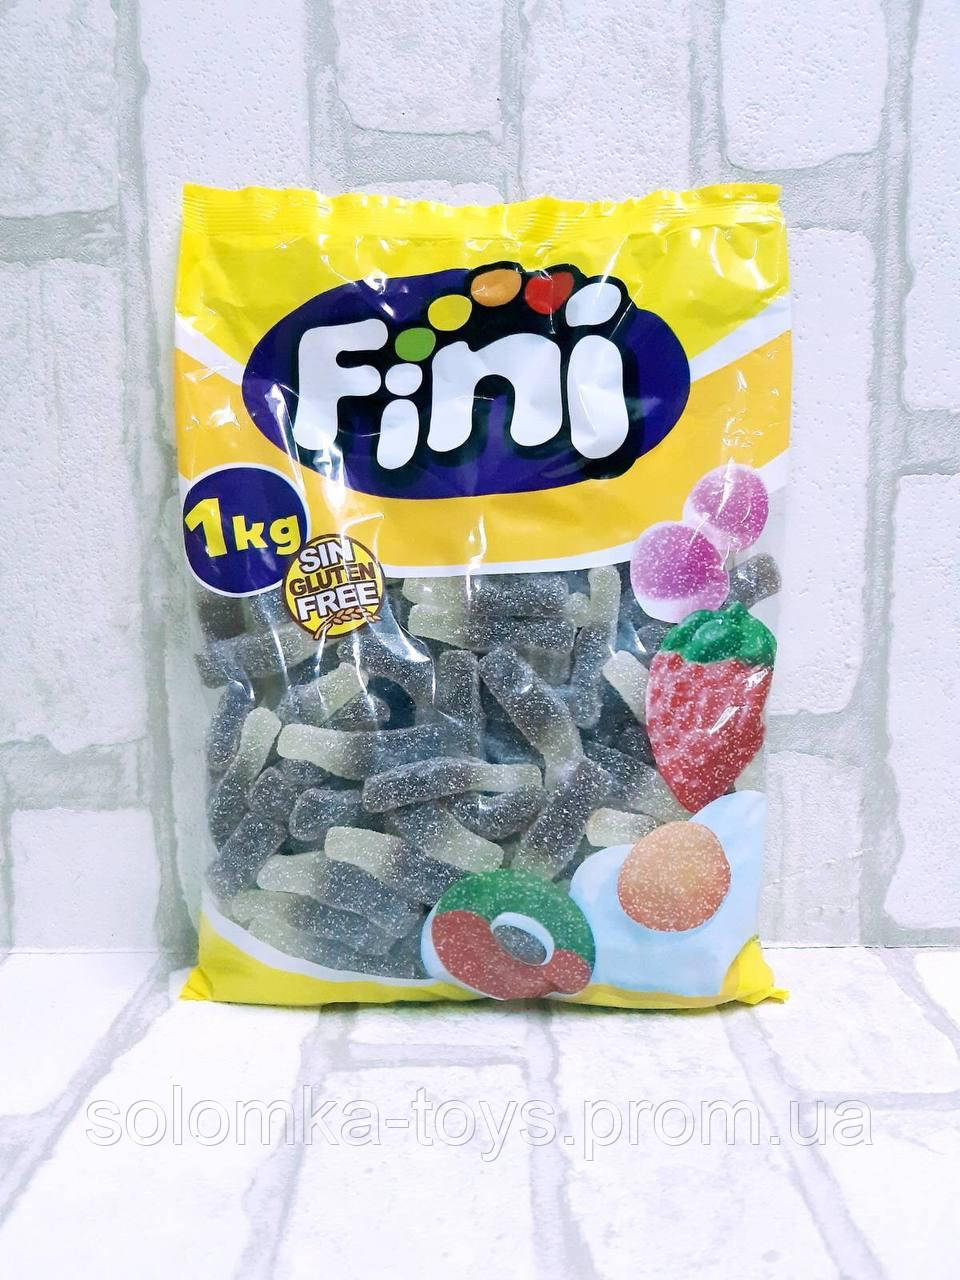 Фруктові жувальні цукерки (мармелад) ТМ Фіні (Fini) у пакетах КИСЛА КОЛА 1 кг